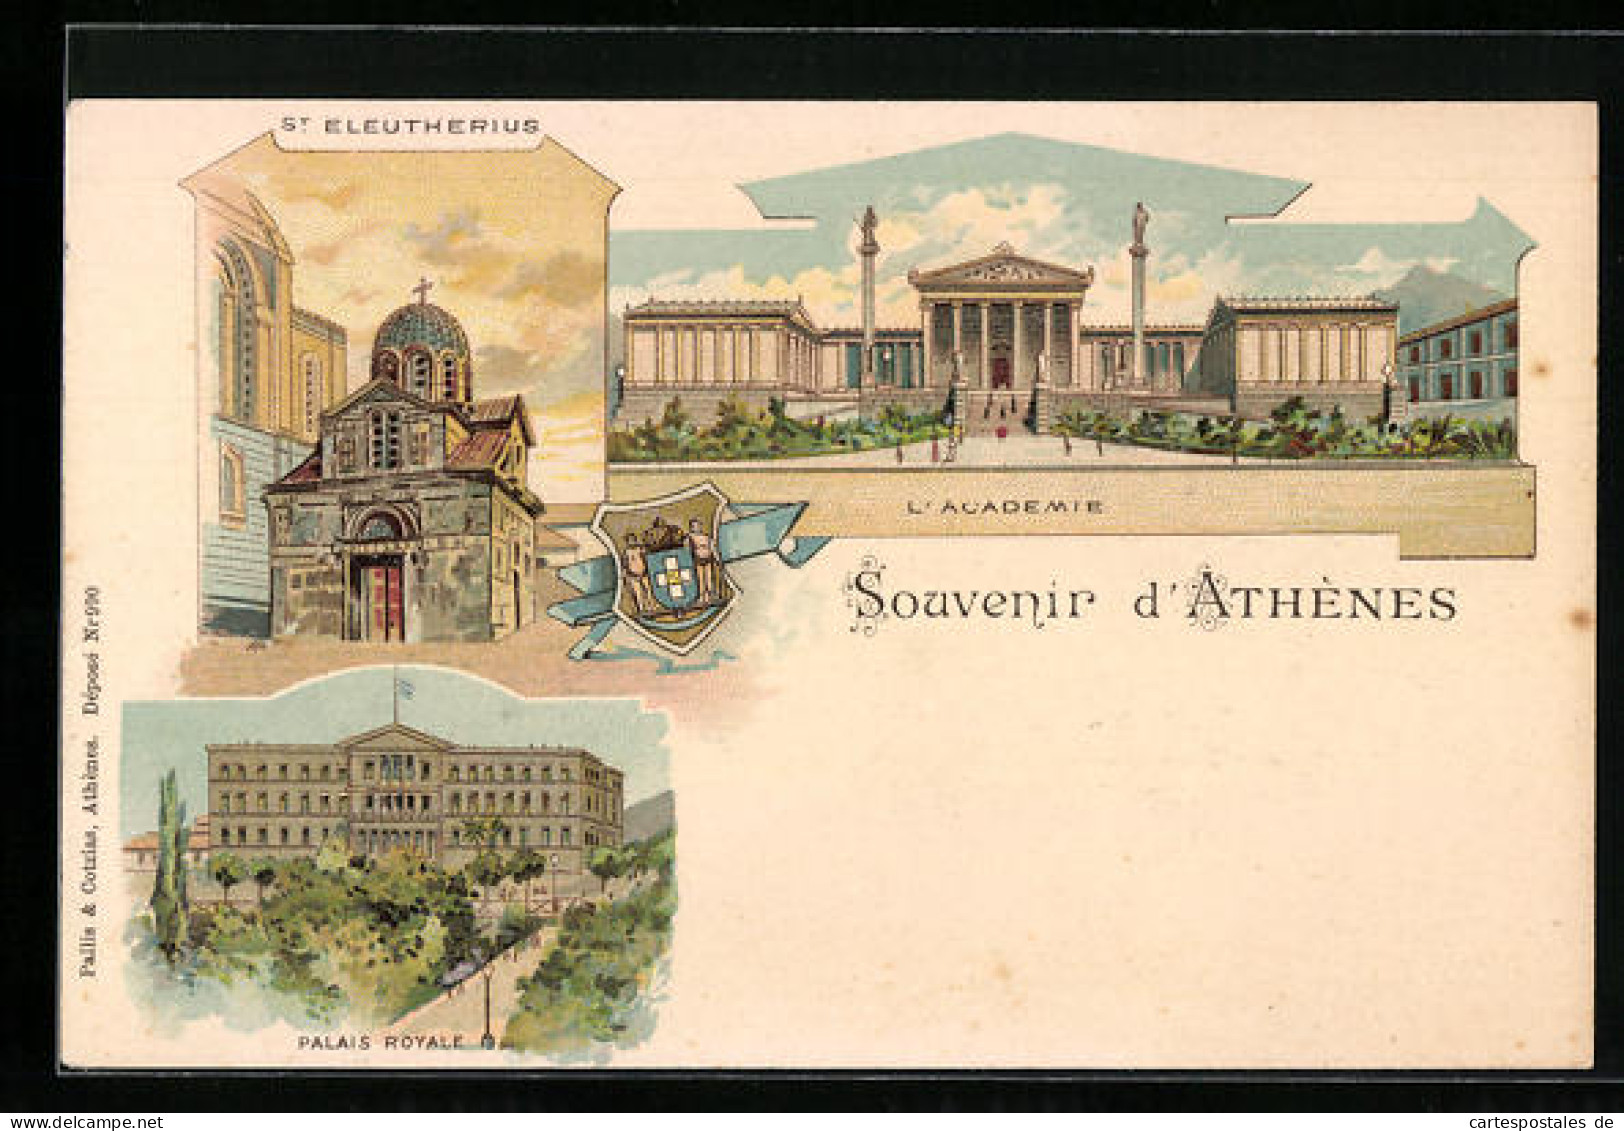 Lithographie Athenes, St. Eleutherius, L`Academie, Palais Royale  - Grèce